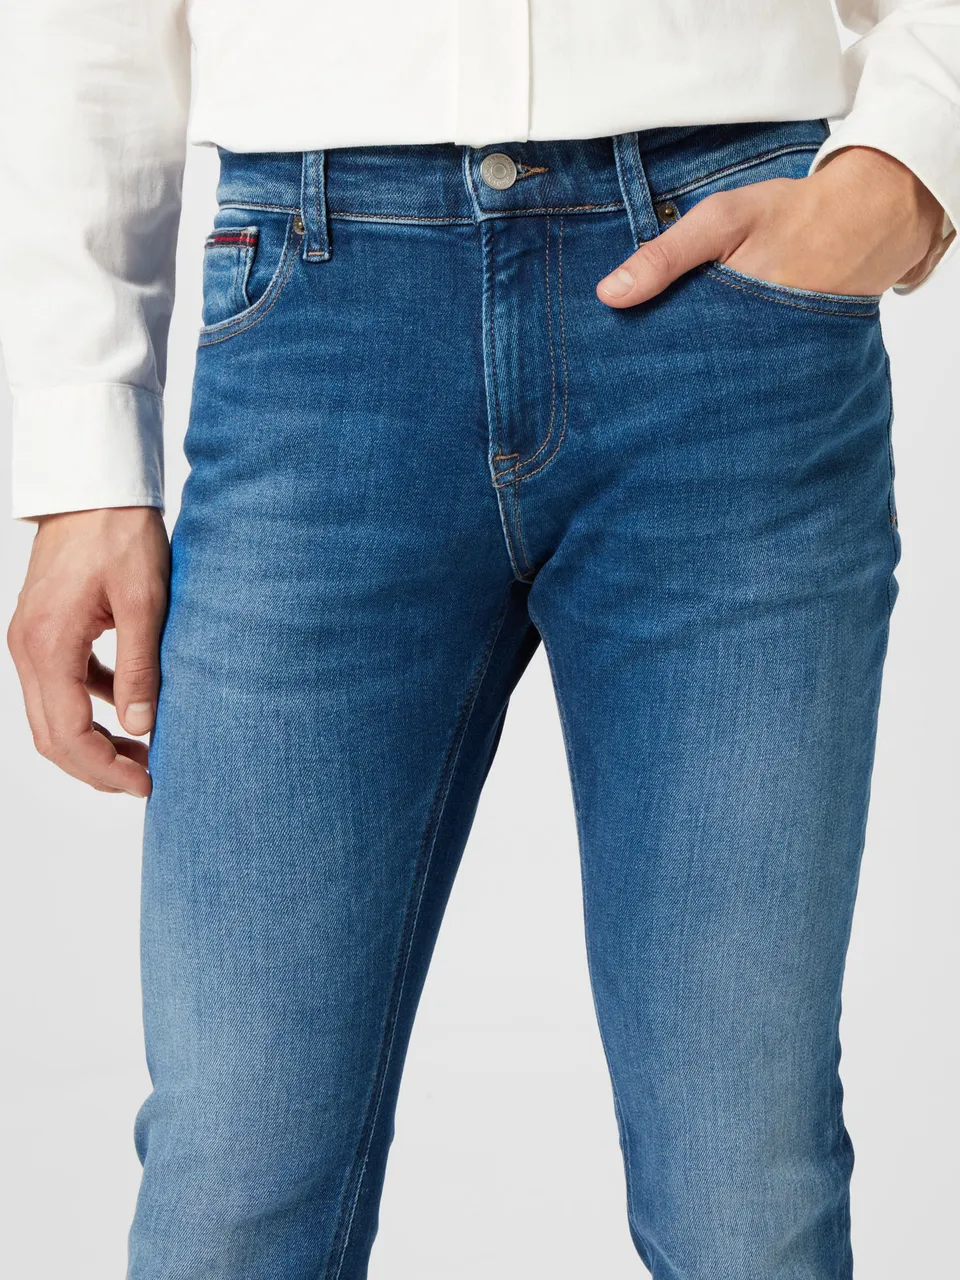 Tommy Hilfiger Jeans \'Scanton\' Scanton DM0DM14821 - Preise vergleichen